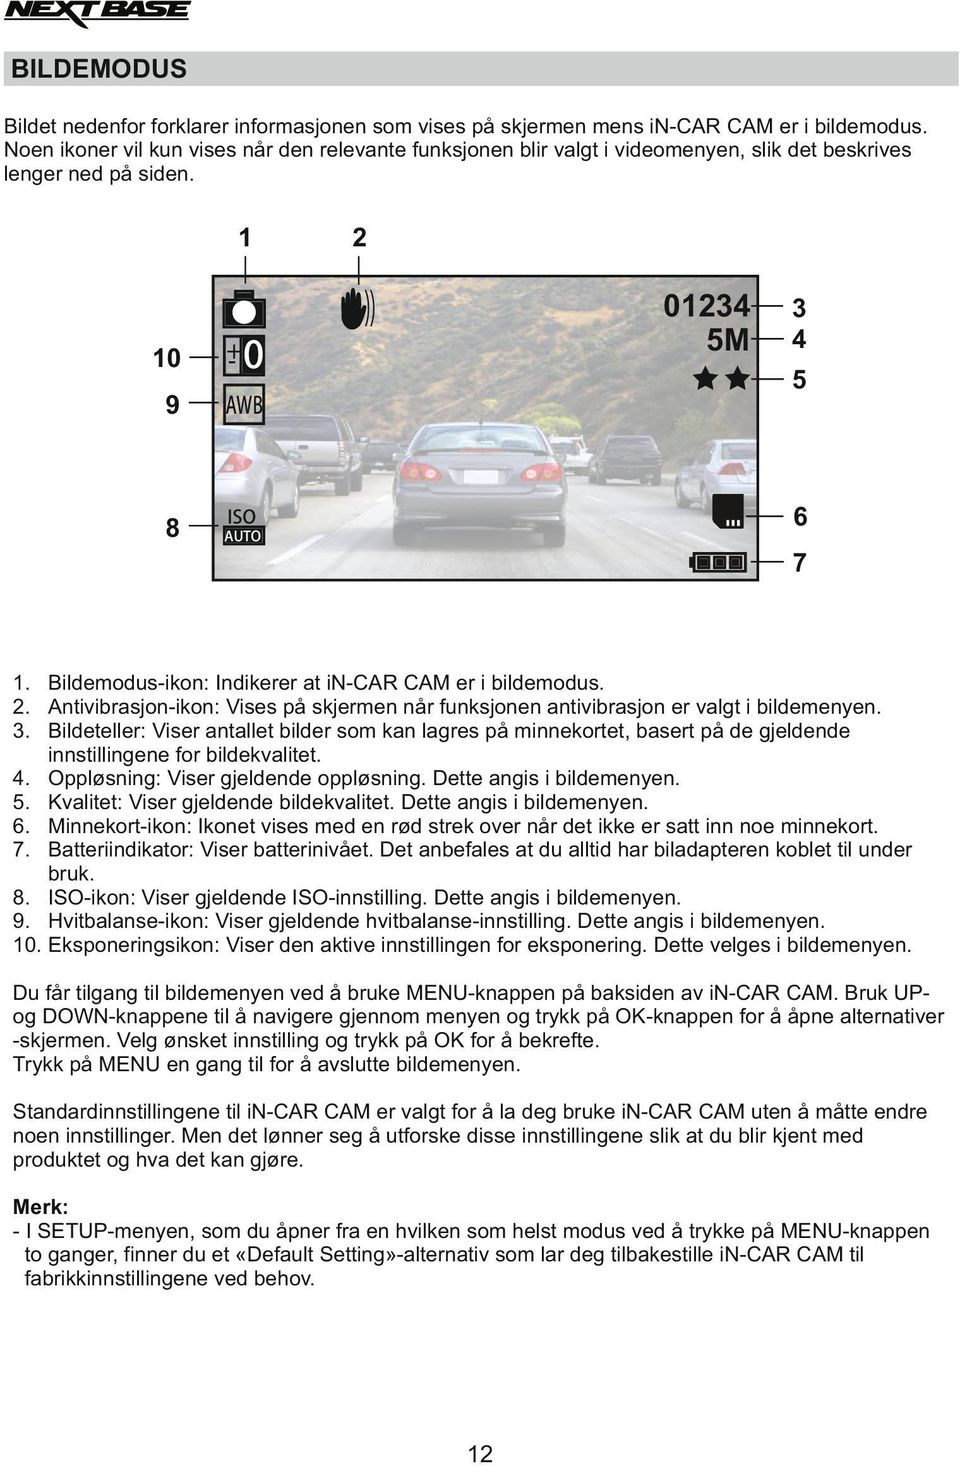 Bildemodus-ikon: Indikerer at in-car CAM er i bildemodus. 2. Antivibrasjon-ikon: Vises på skjermen når funksjonen antivibrasjon er valgt i bildemenyen. 3.